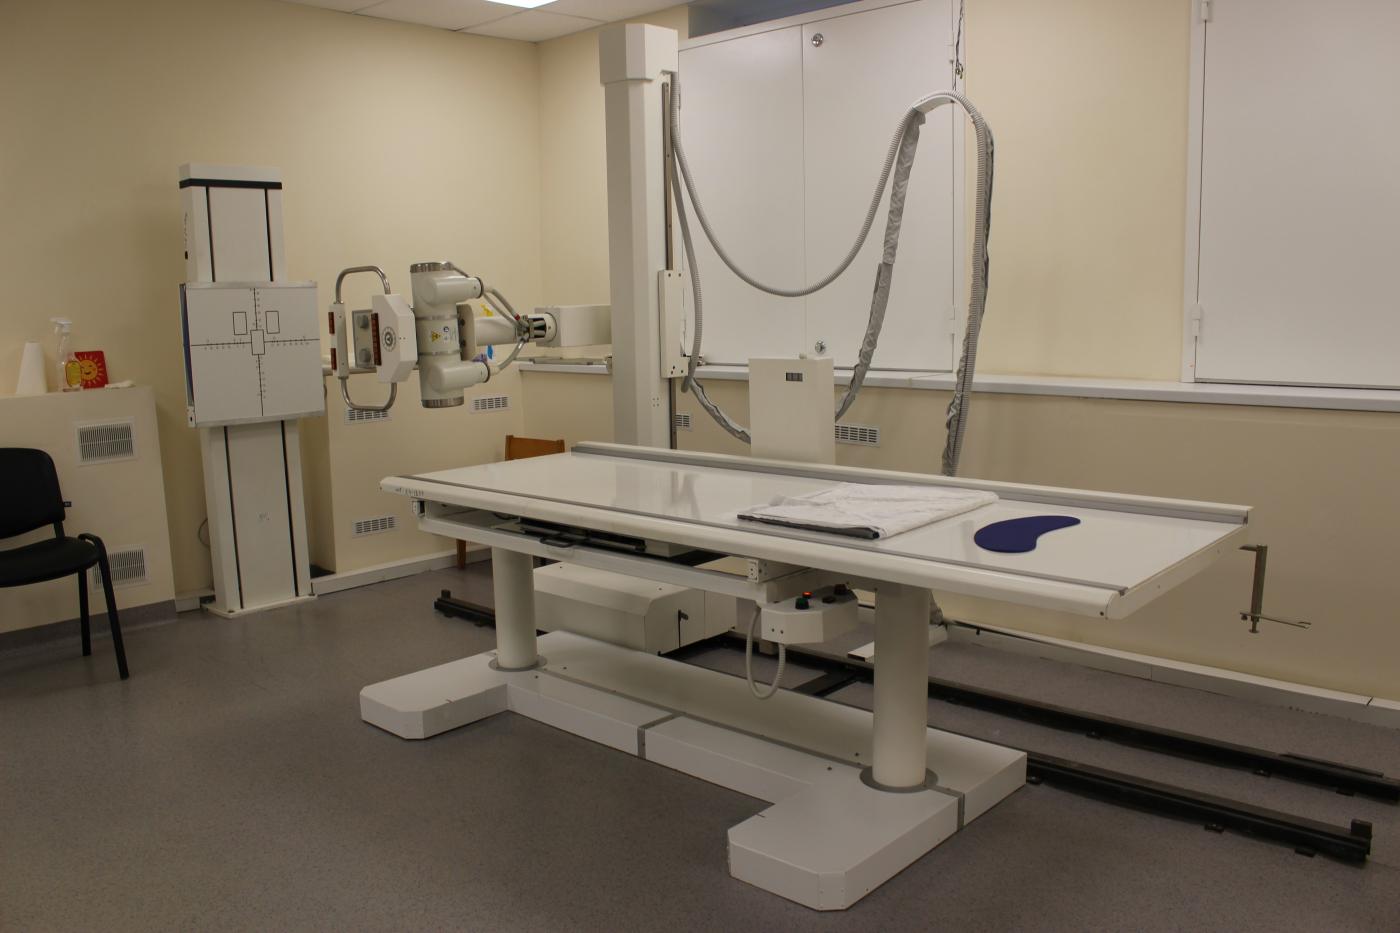 Заключен контракт на поставку рентген-аппарата в поликлинику Янтарного